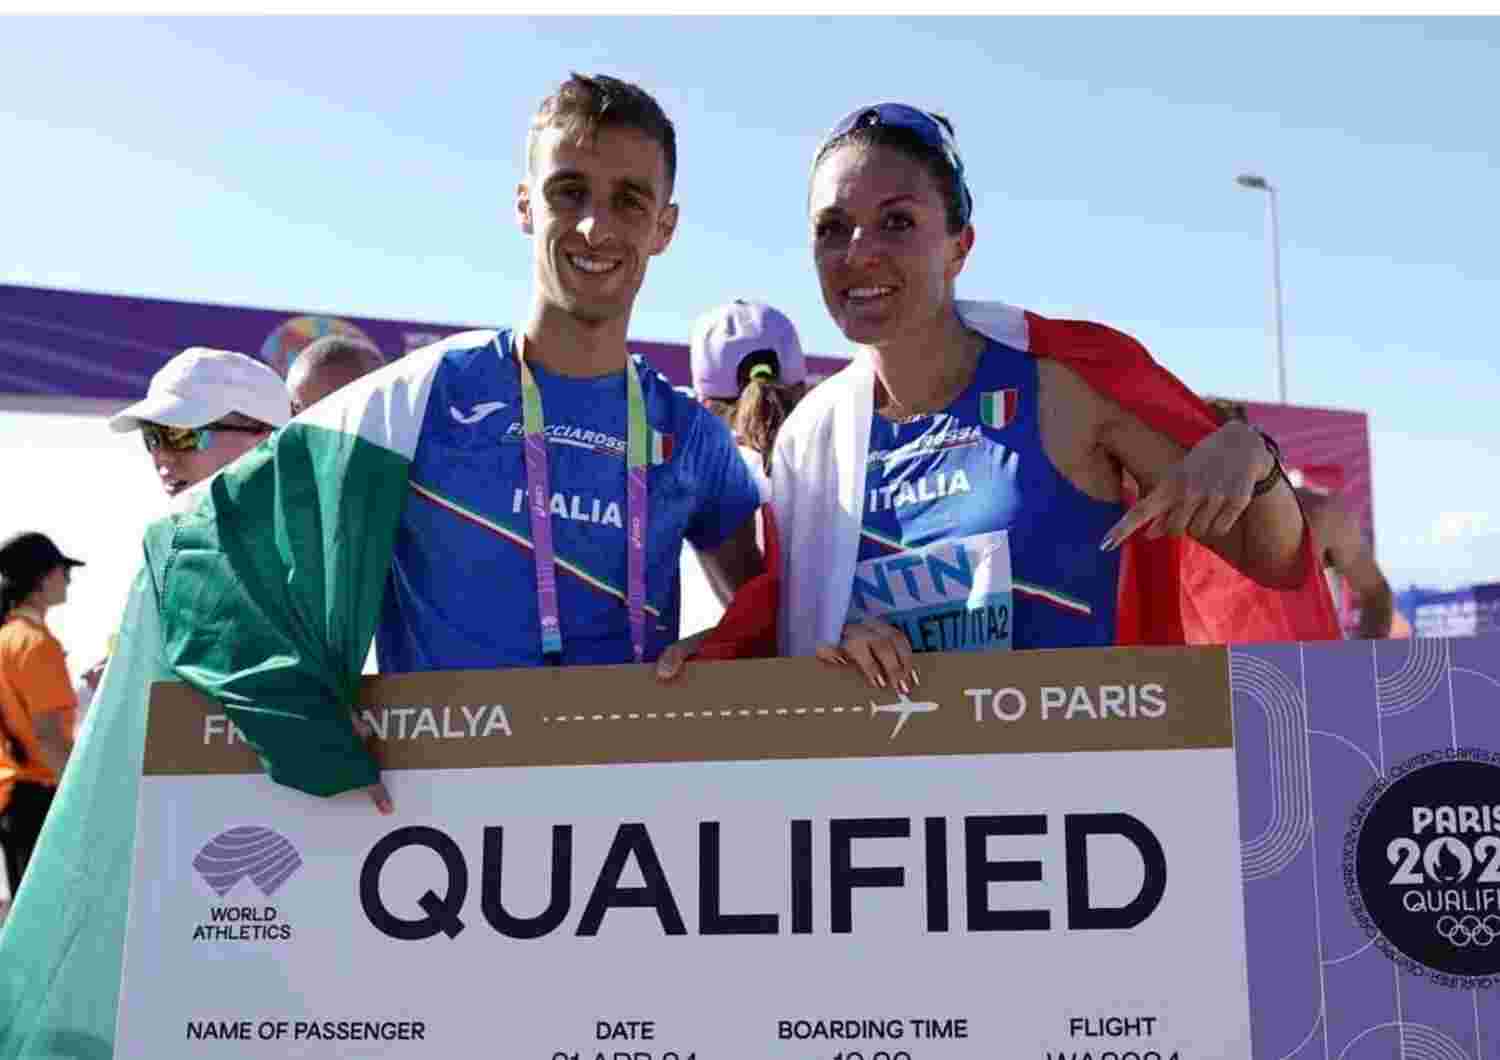 Francesco Fortunato e Valentina Trapletti trionfano nella staffetta mista dei mondiali a squadre di Marcia